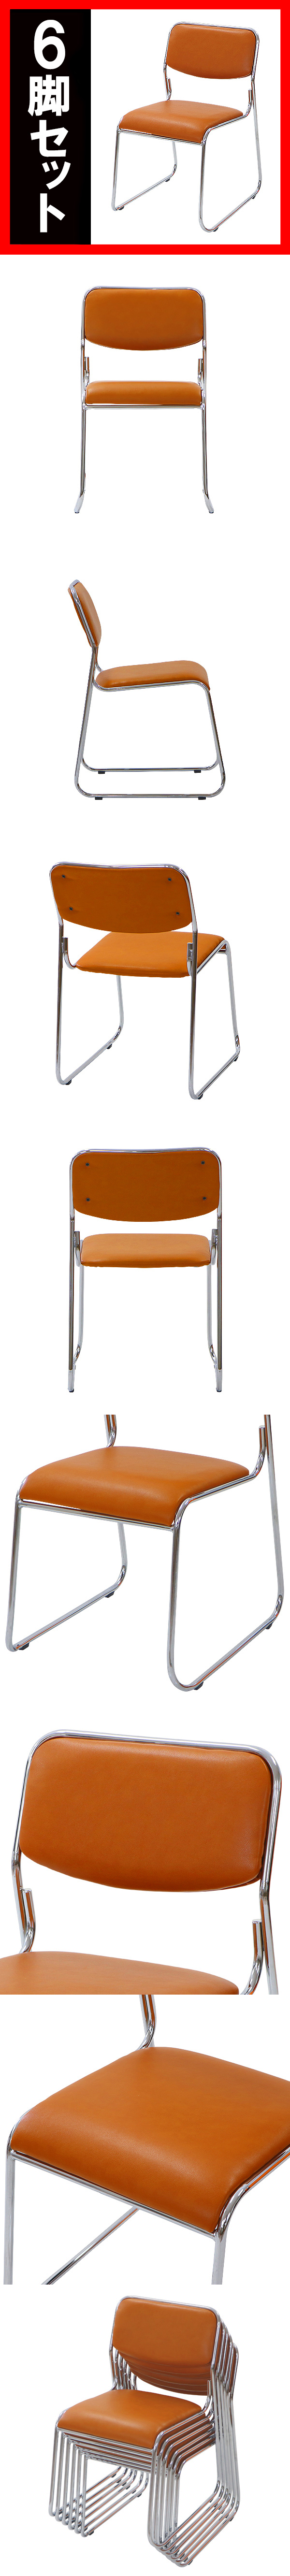 【即納得価】送料無料 6脚セット ミーティングチェア 会議イス 会議椅子 スタッキングチェア パイプチェア パイプイス パイプ椅子 キャメル パイプイス